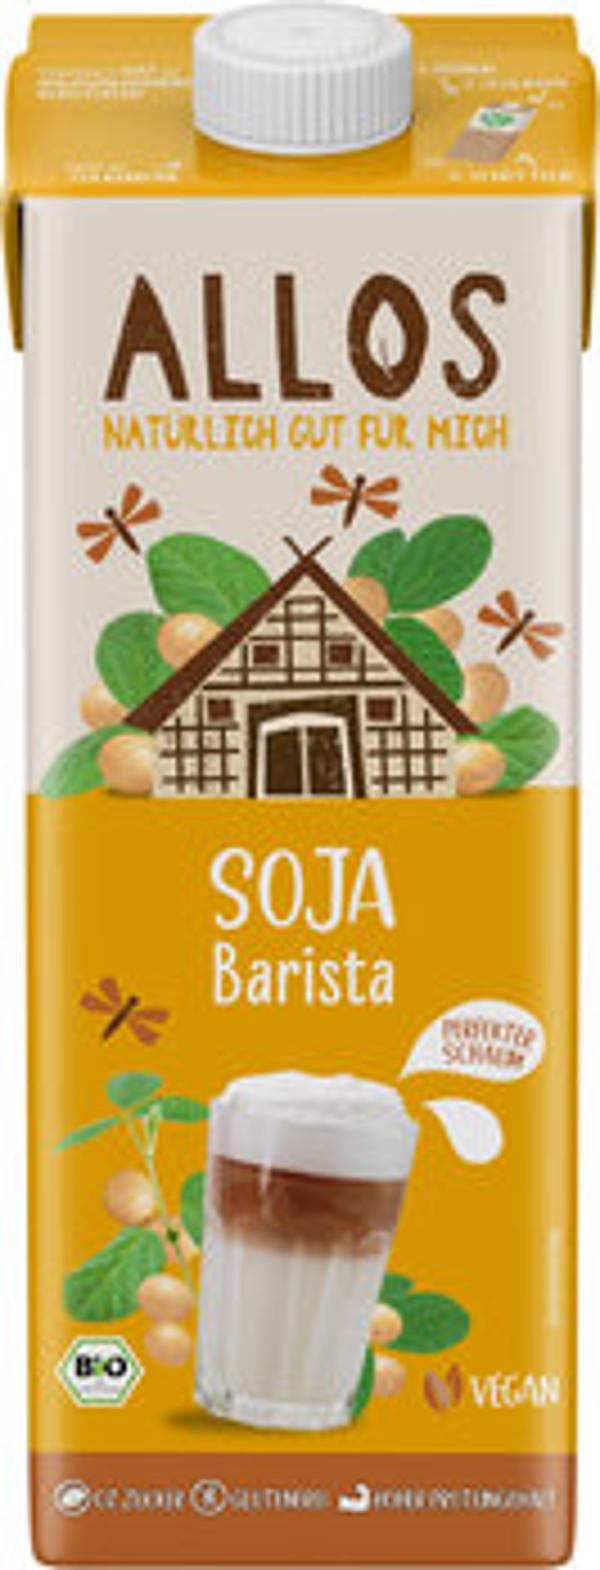 Produktfoto zu Soja Barista Drink (6 x 1 Liter)